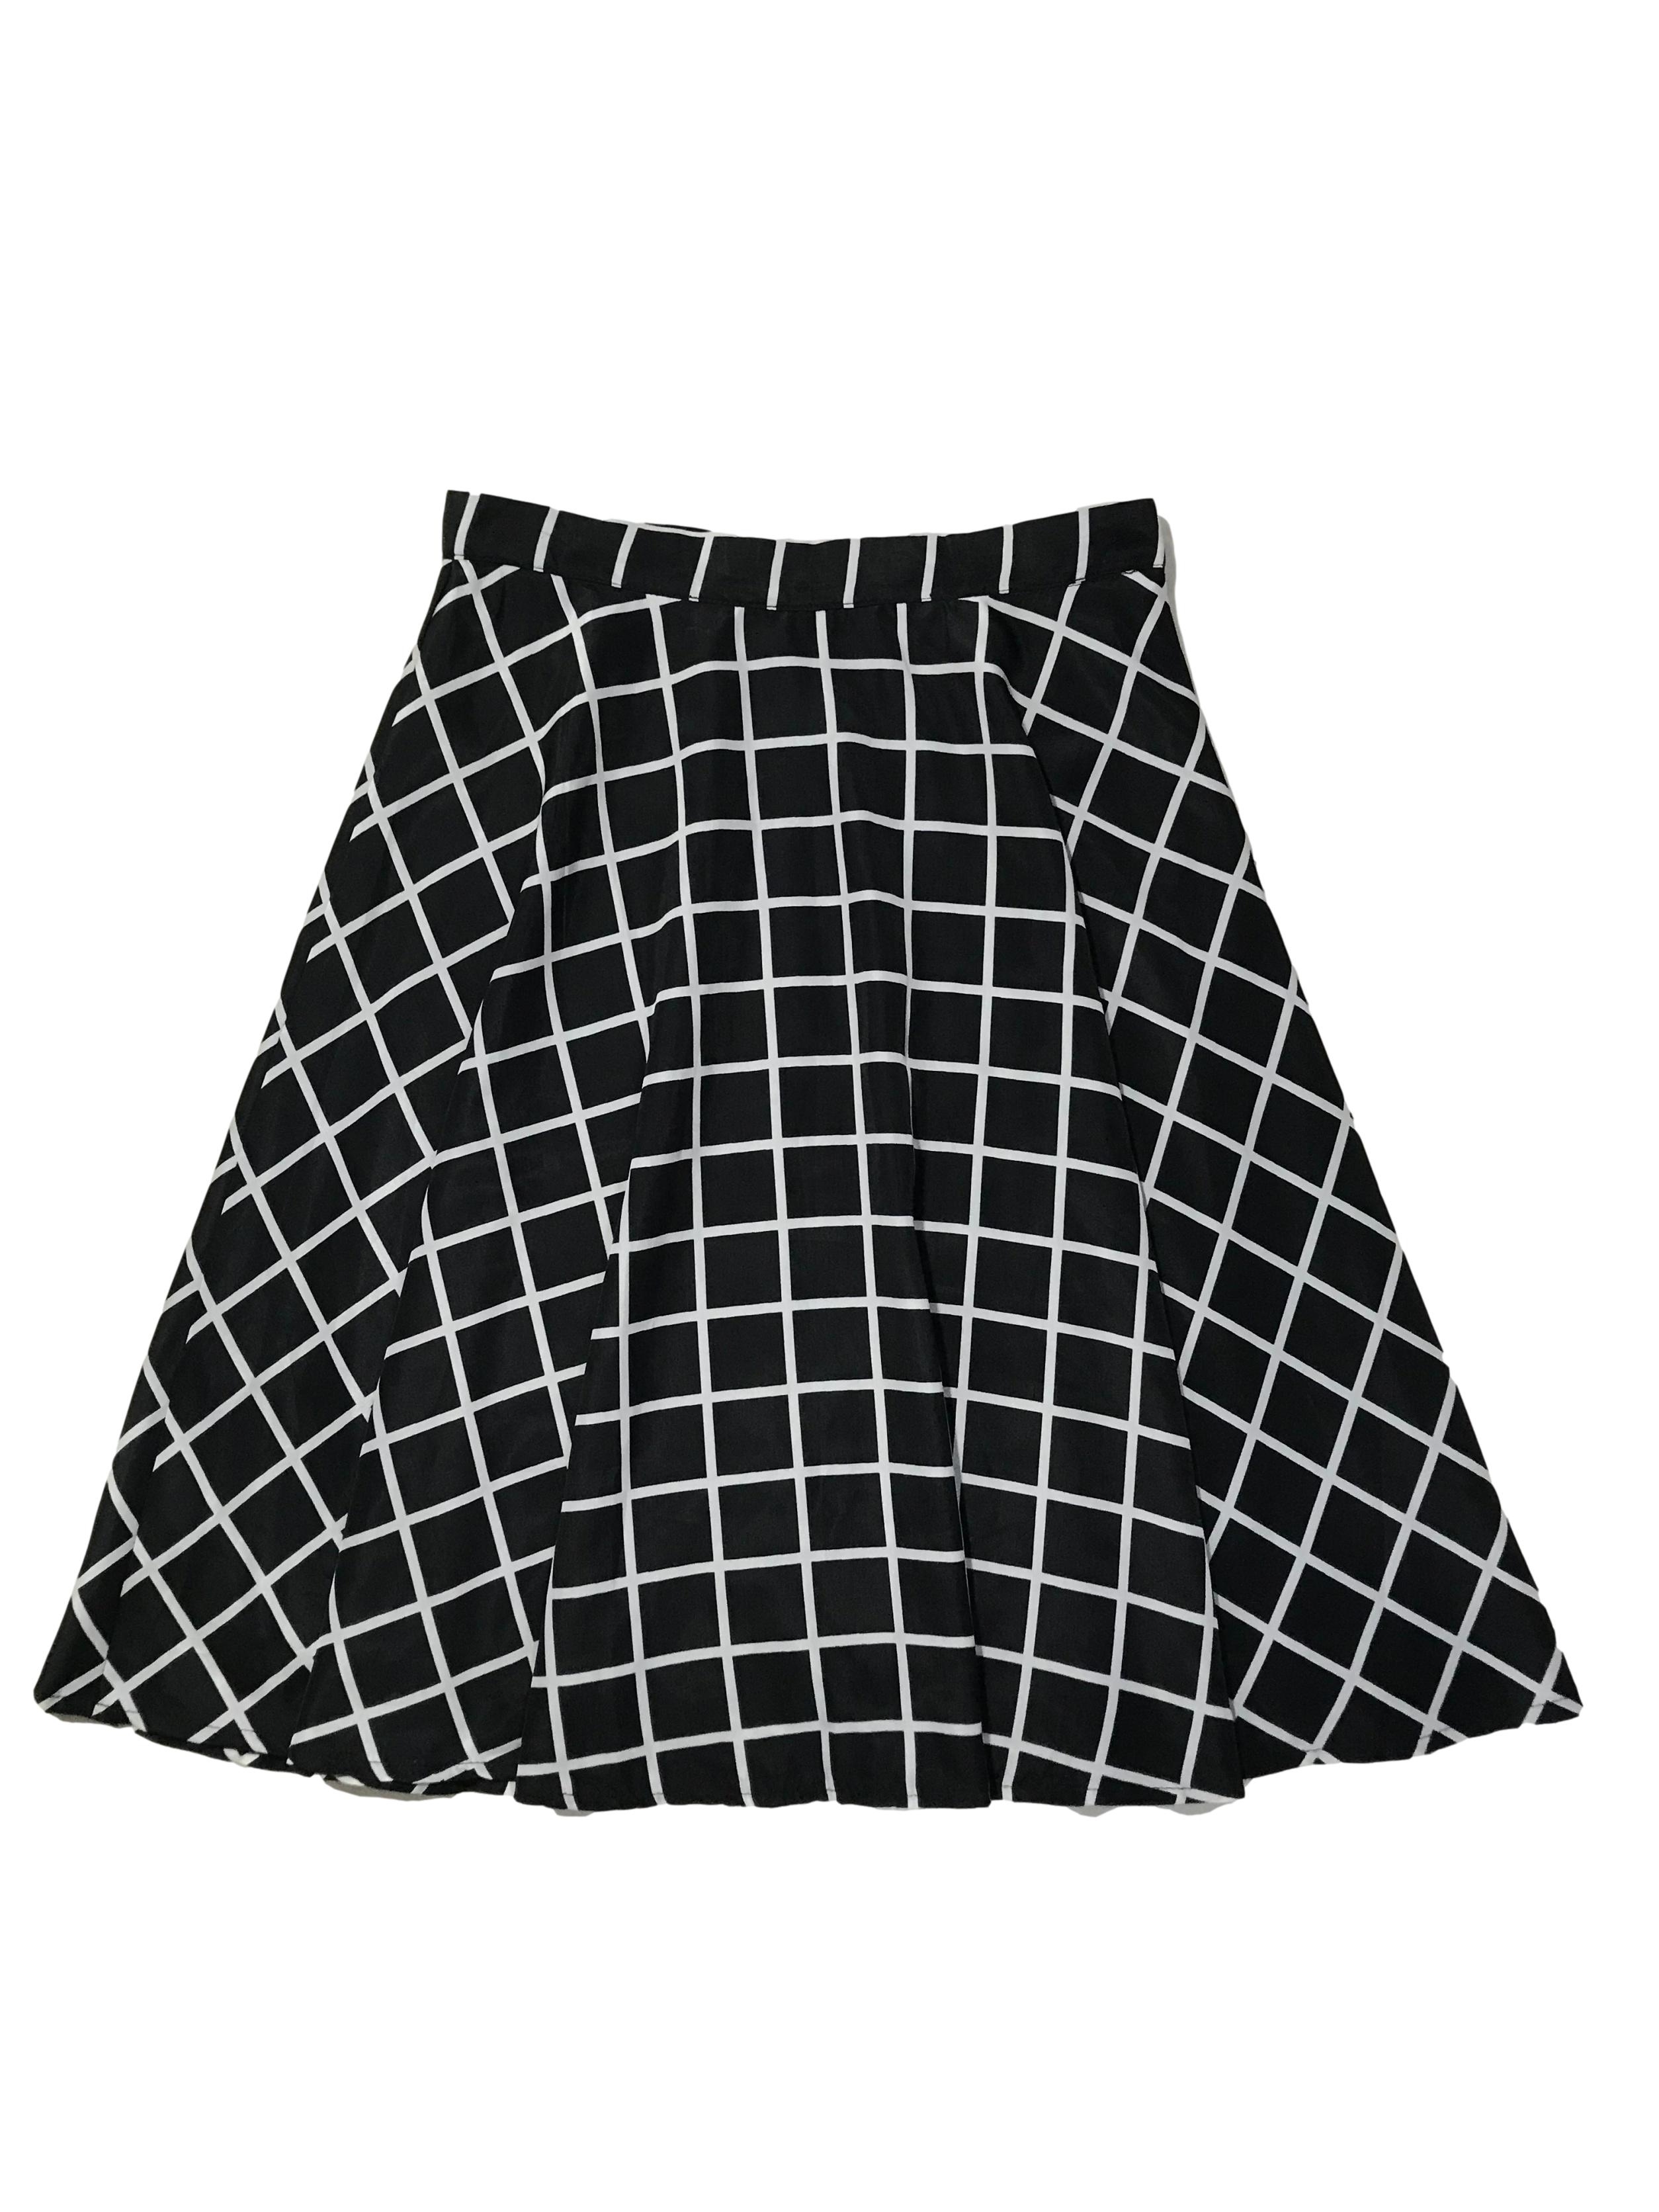 Falda campana Forever21 de tela plana sedosa a cuadros negros, es forrada, lleva cierre y botón lateral. Cintura 70cm Largo 60cm | Las